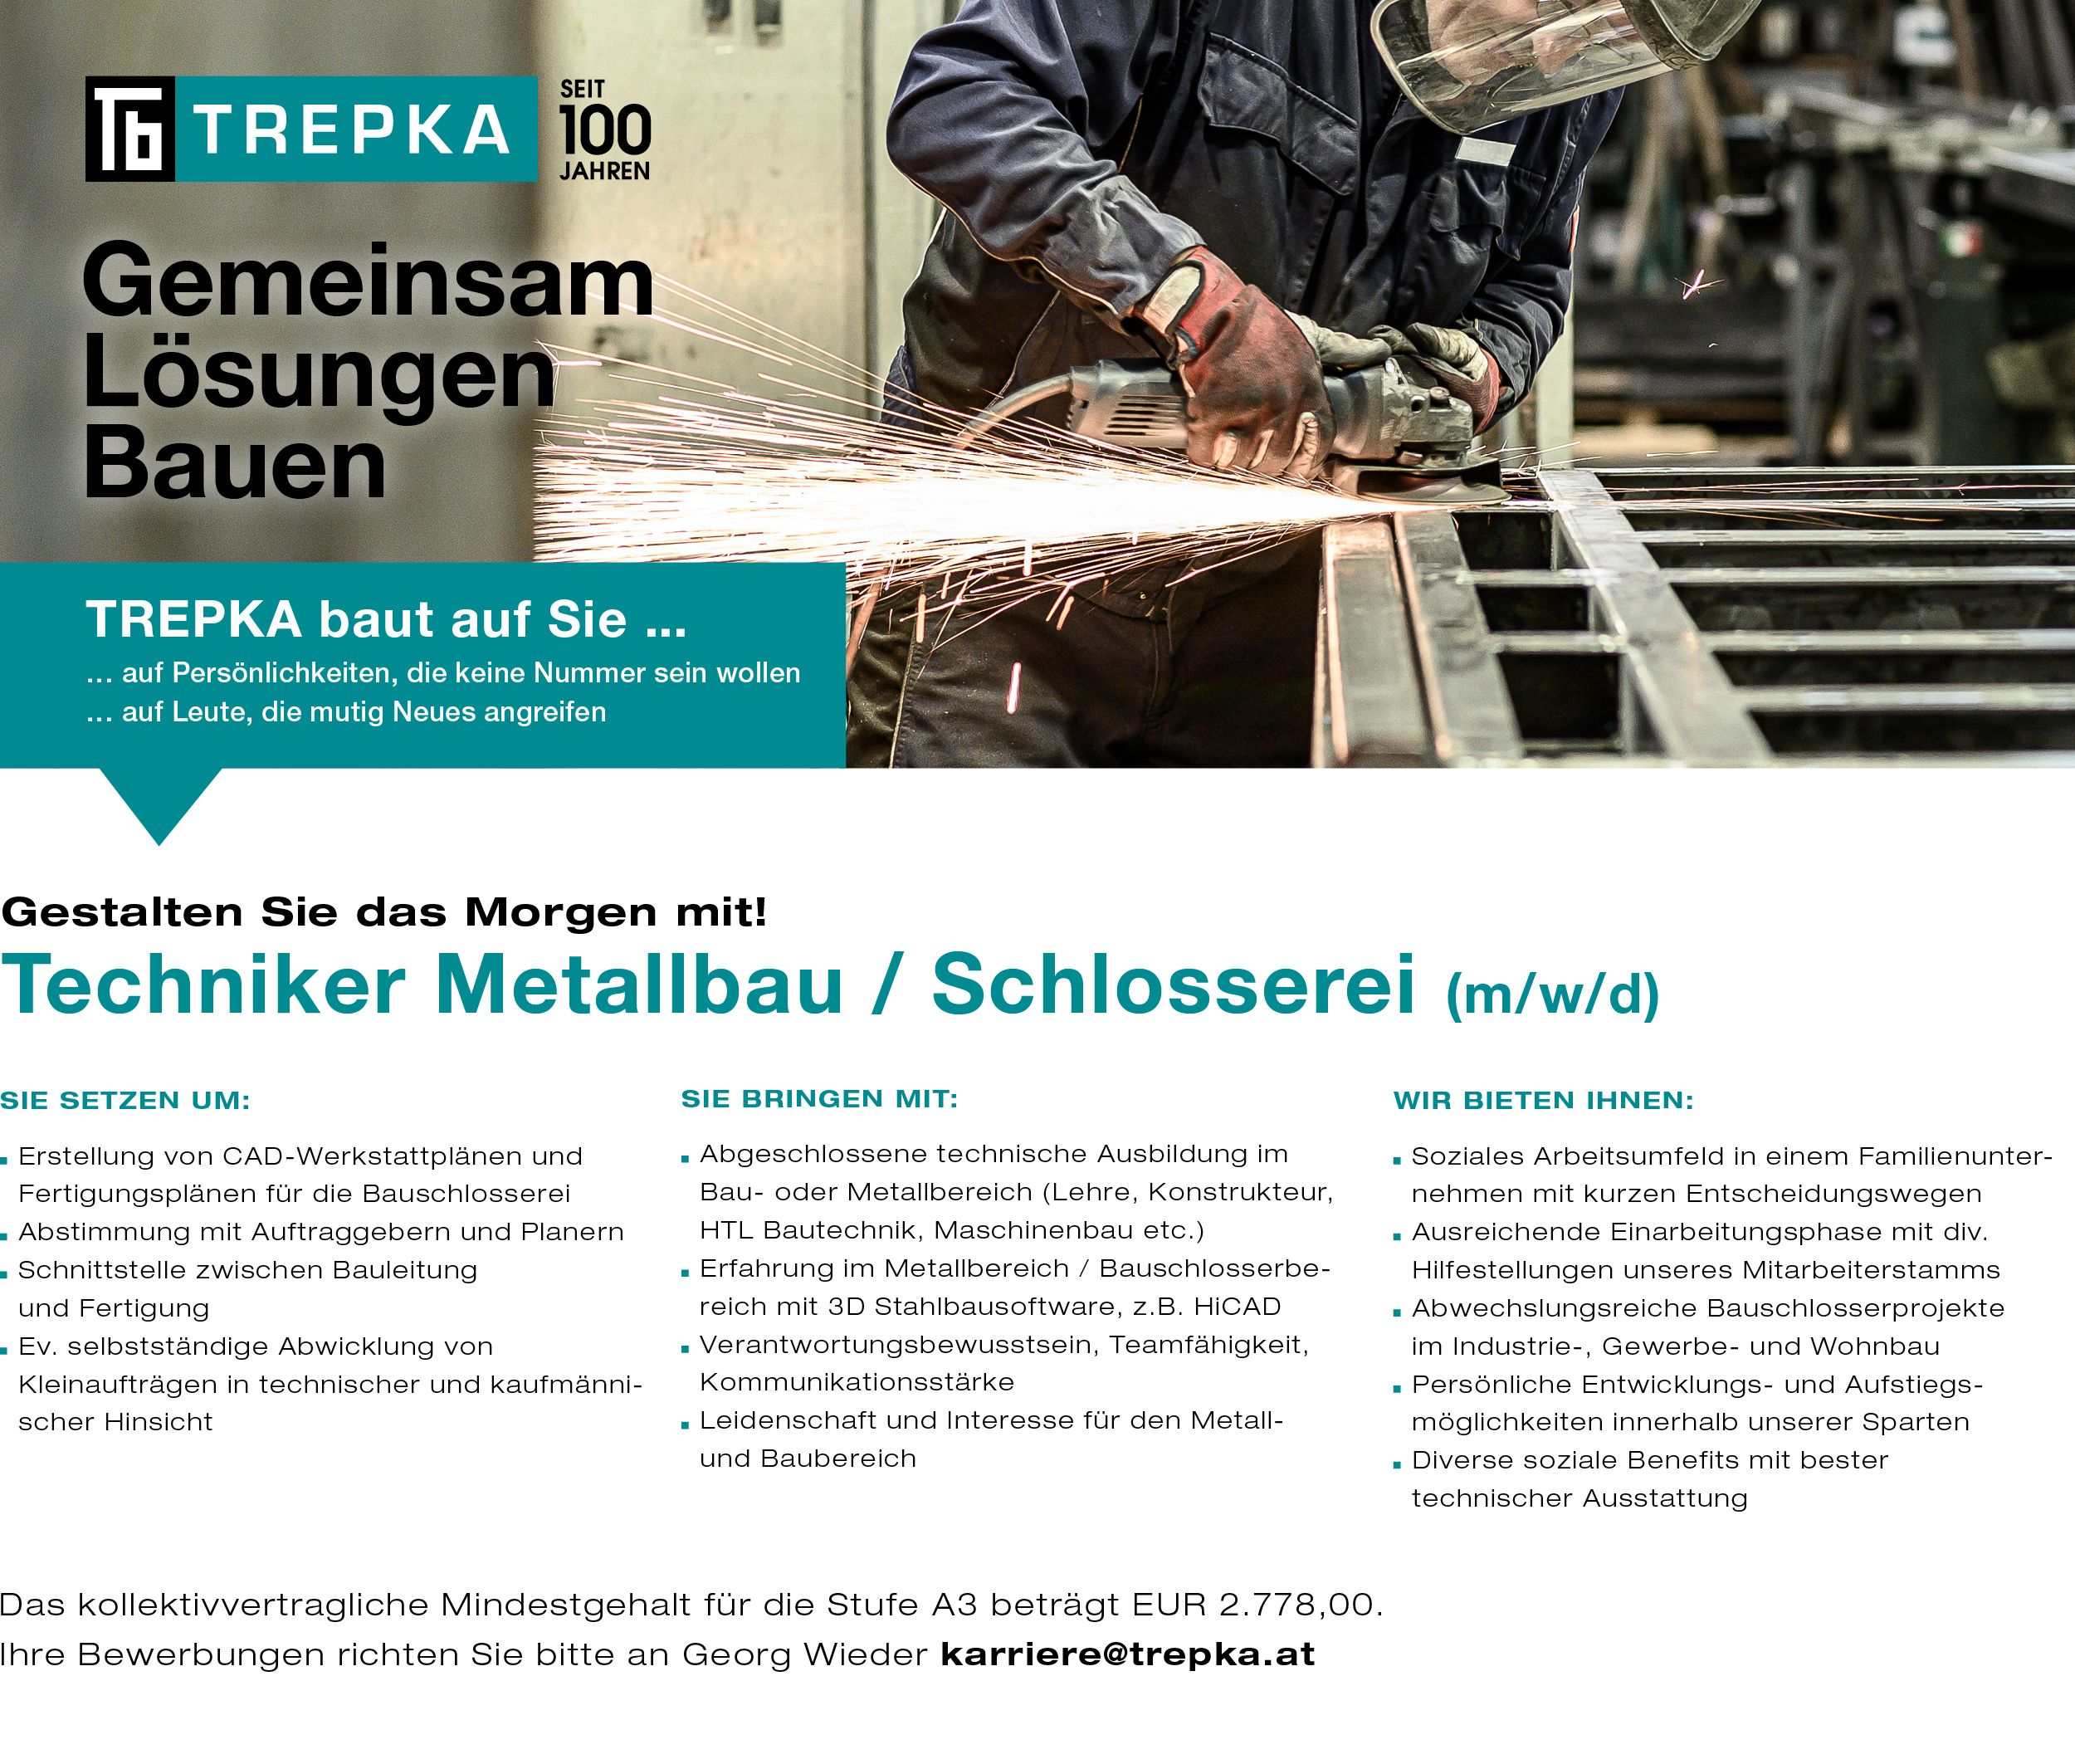 Job als Techniker Metallbau bzw. Schlosserei bei Trepka in Ober-Grafendorf.